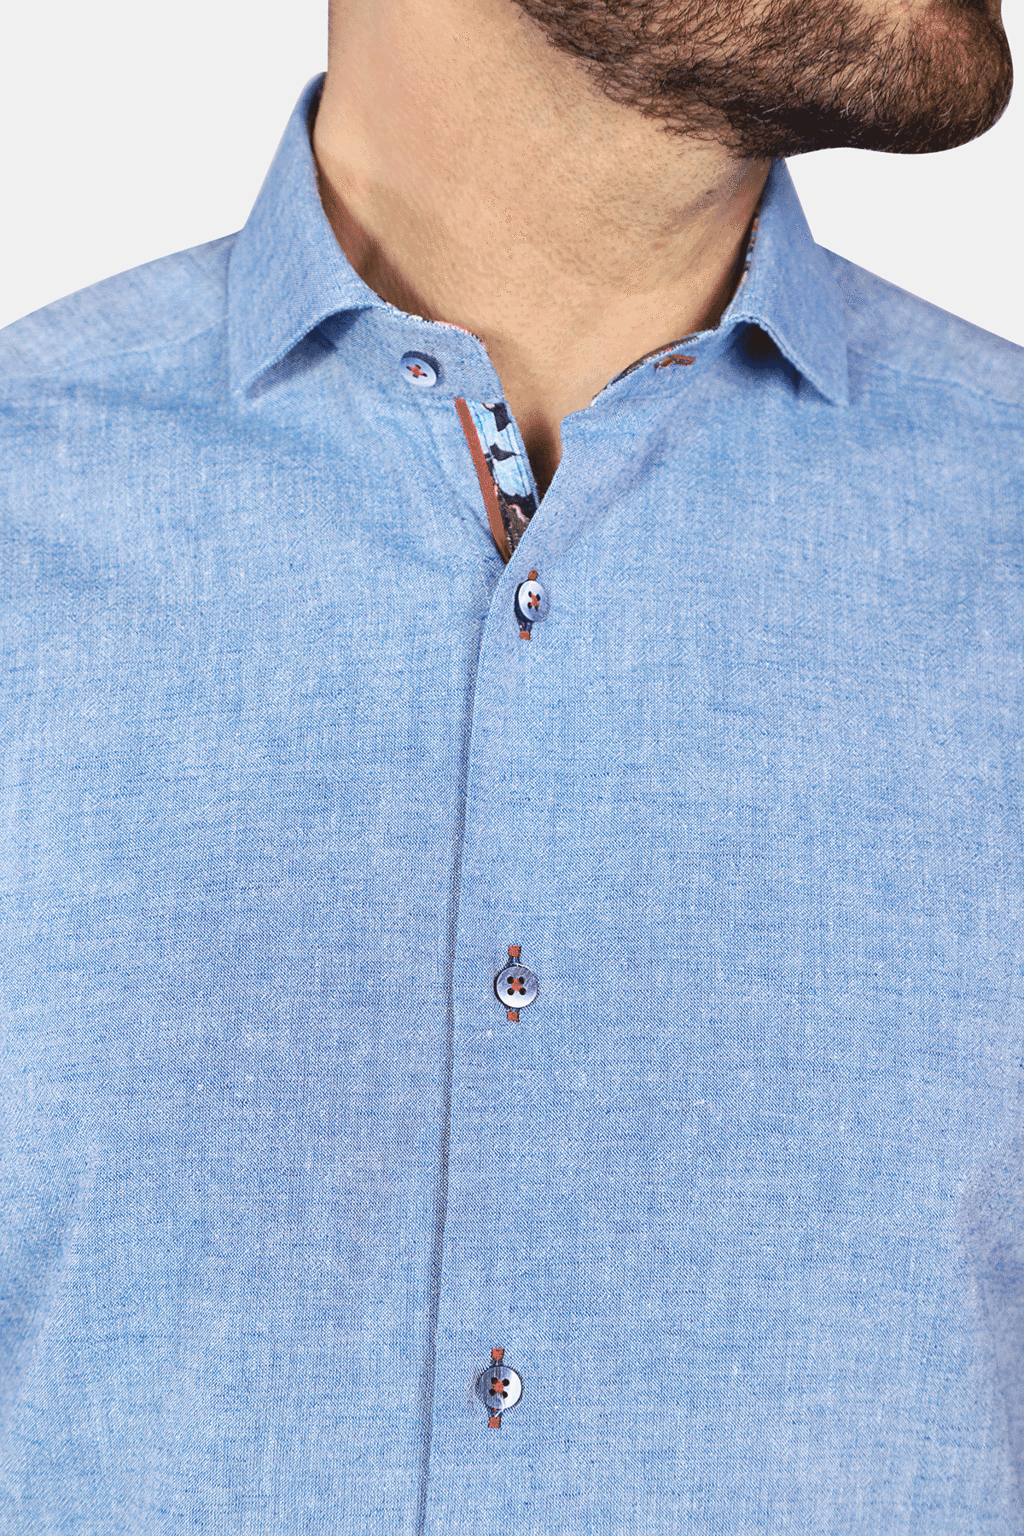 Blue linen buttoned short sleeve shirt.   